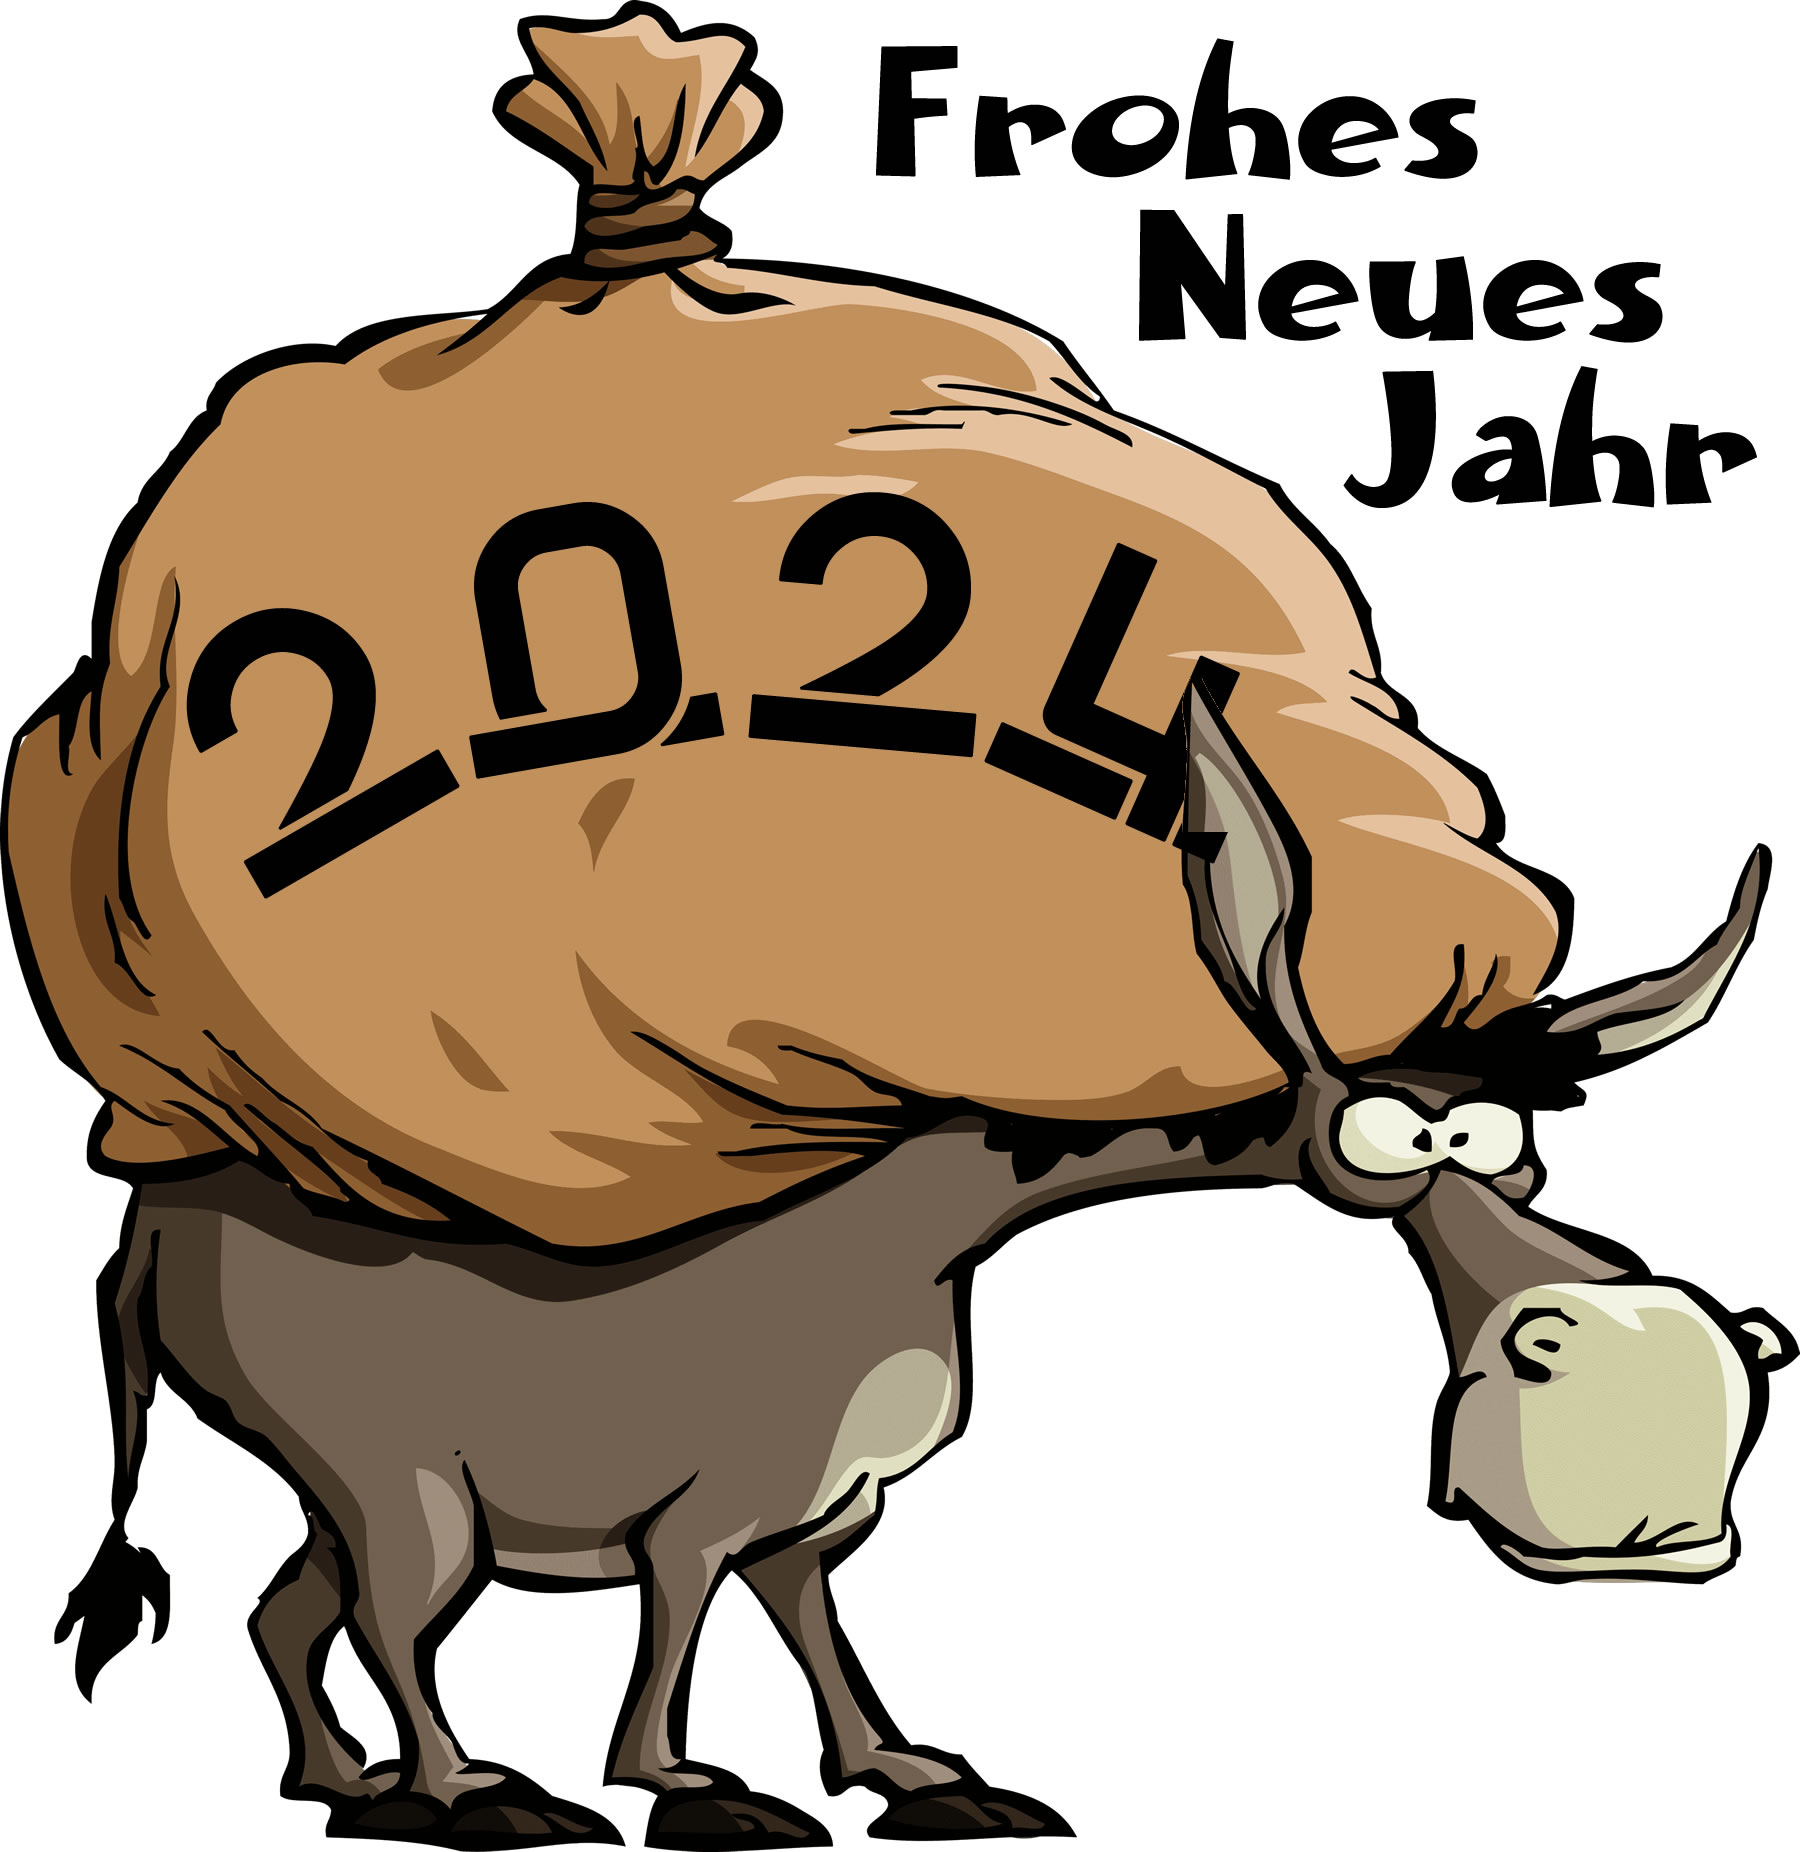 Humorvoller Cartoon mit einem armen Esel, der mit Säcken beladen ist, wird 2025 so sein?